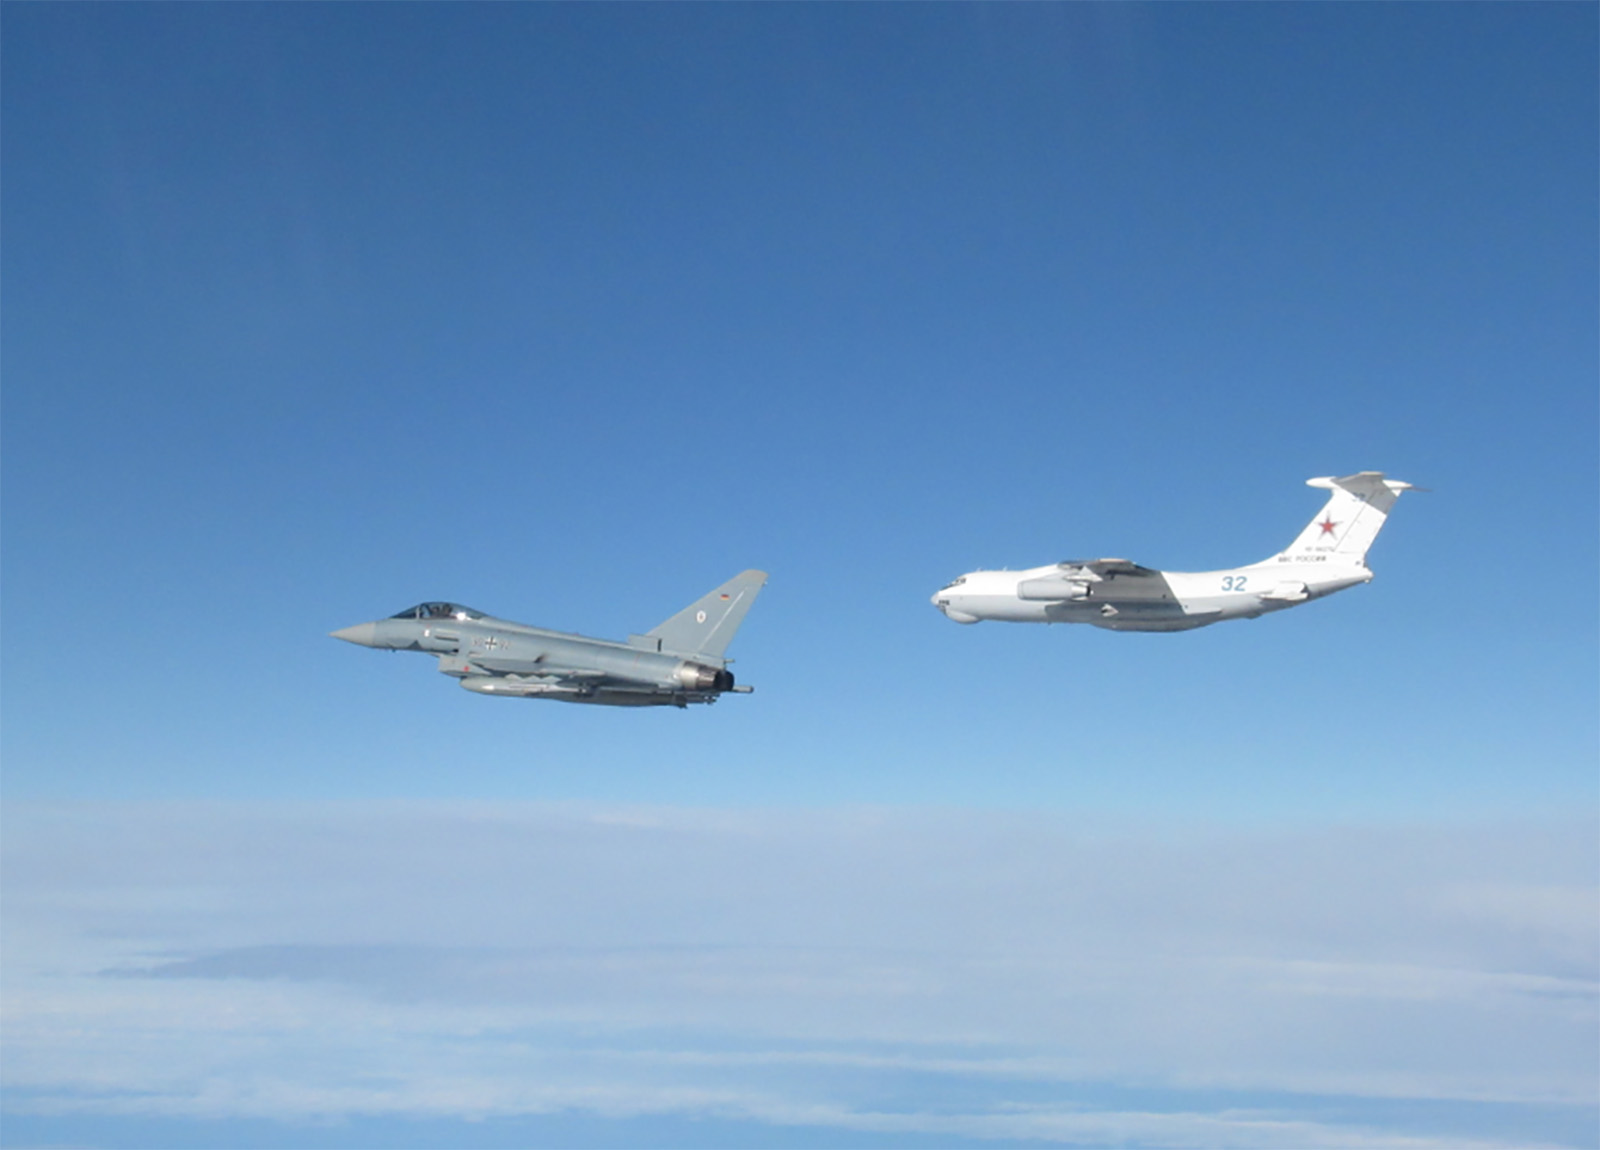 Chiến đấu cơ Typhoon của Anh (màu xám) chặn máy bay quân sự Nga (màu trắng) (ảnh: CNN)